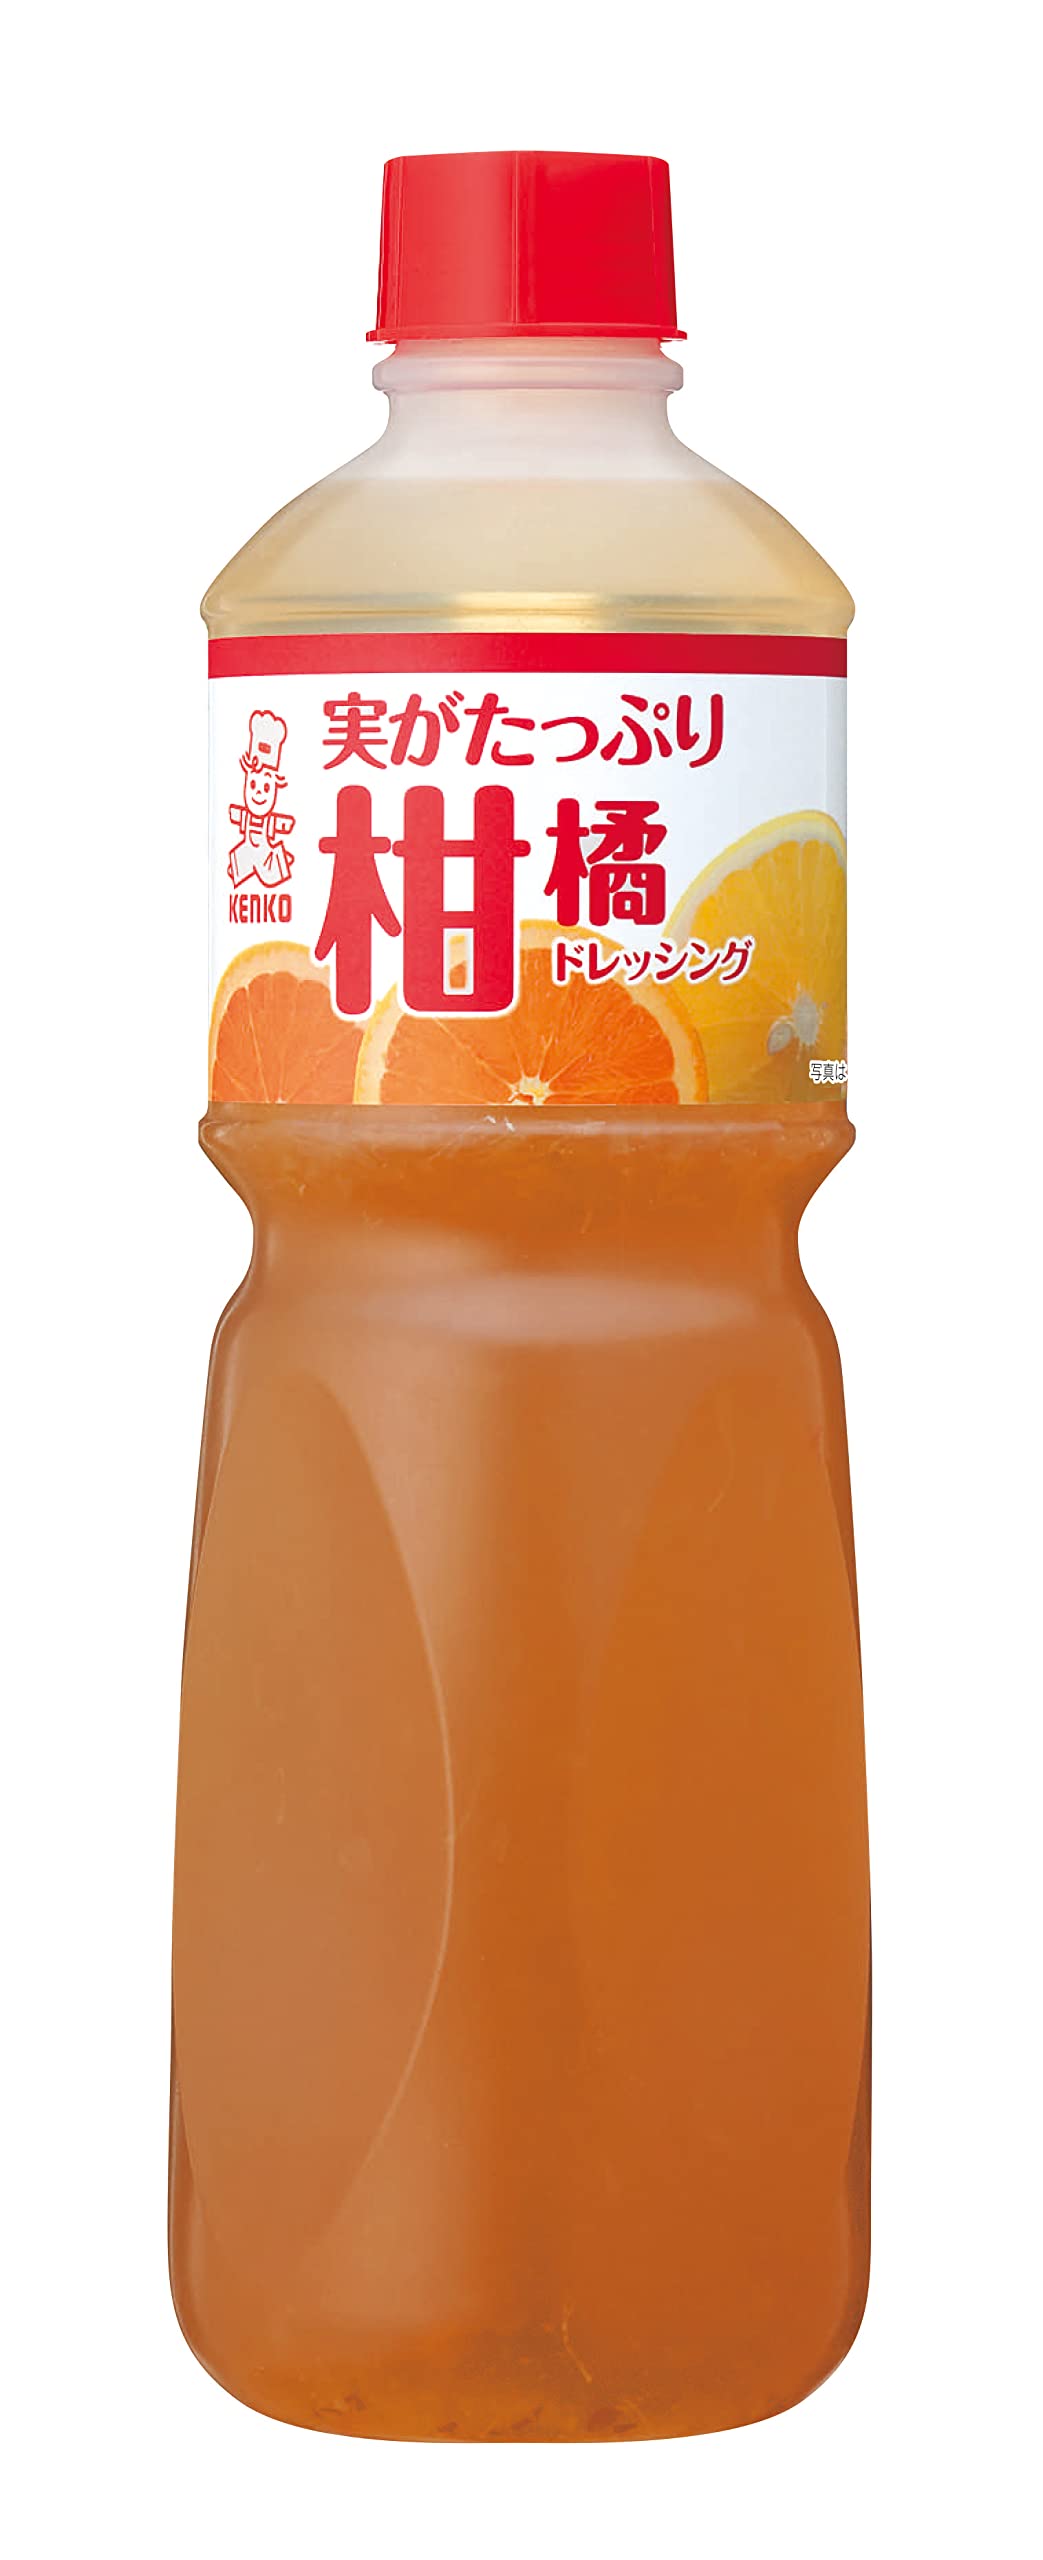 ケンコー(Kenko) マヨネーズ 実がたっぷり柑橘ドレッシング 1L